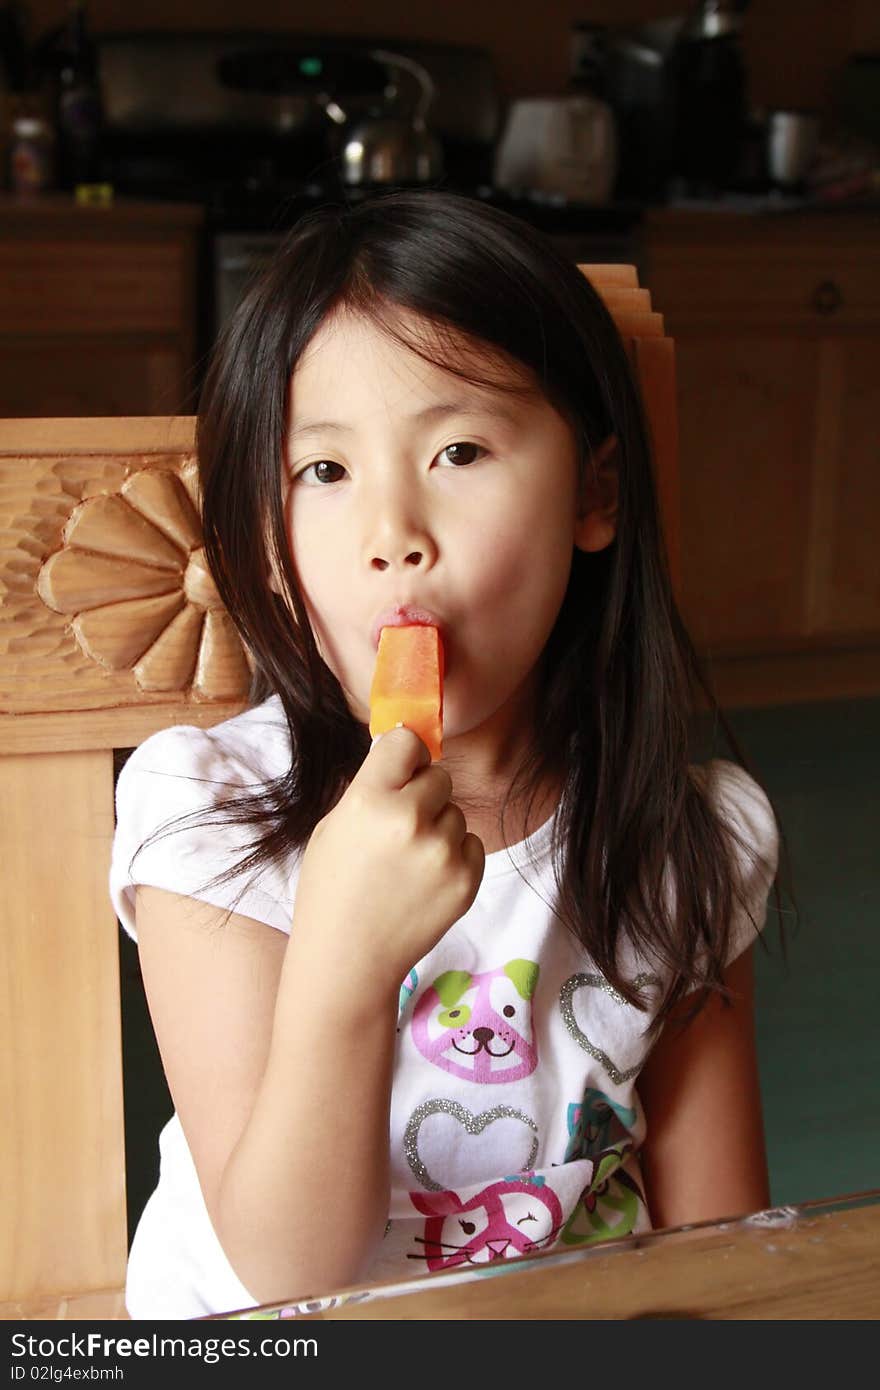 Little asia girl eating an orange ice pop. Little asia girl eating an orange ice pop